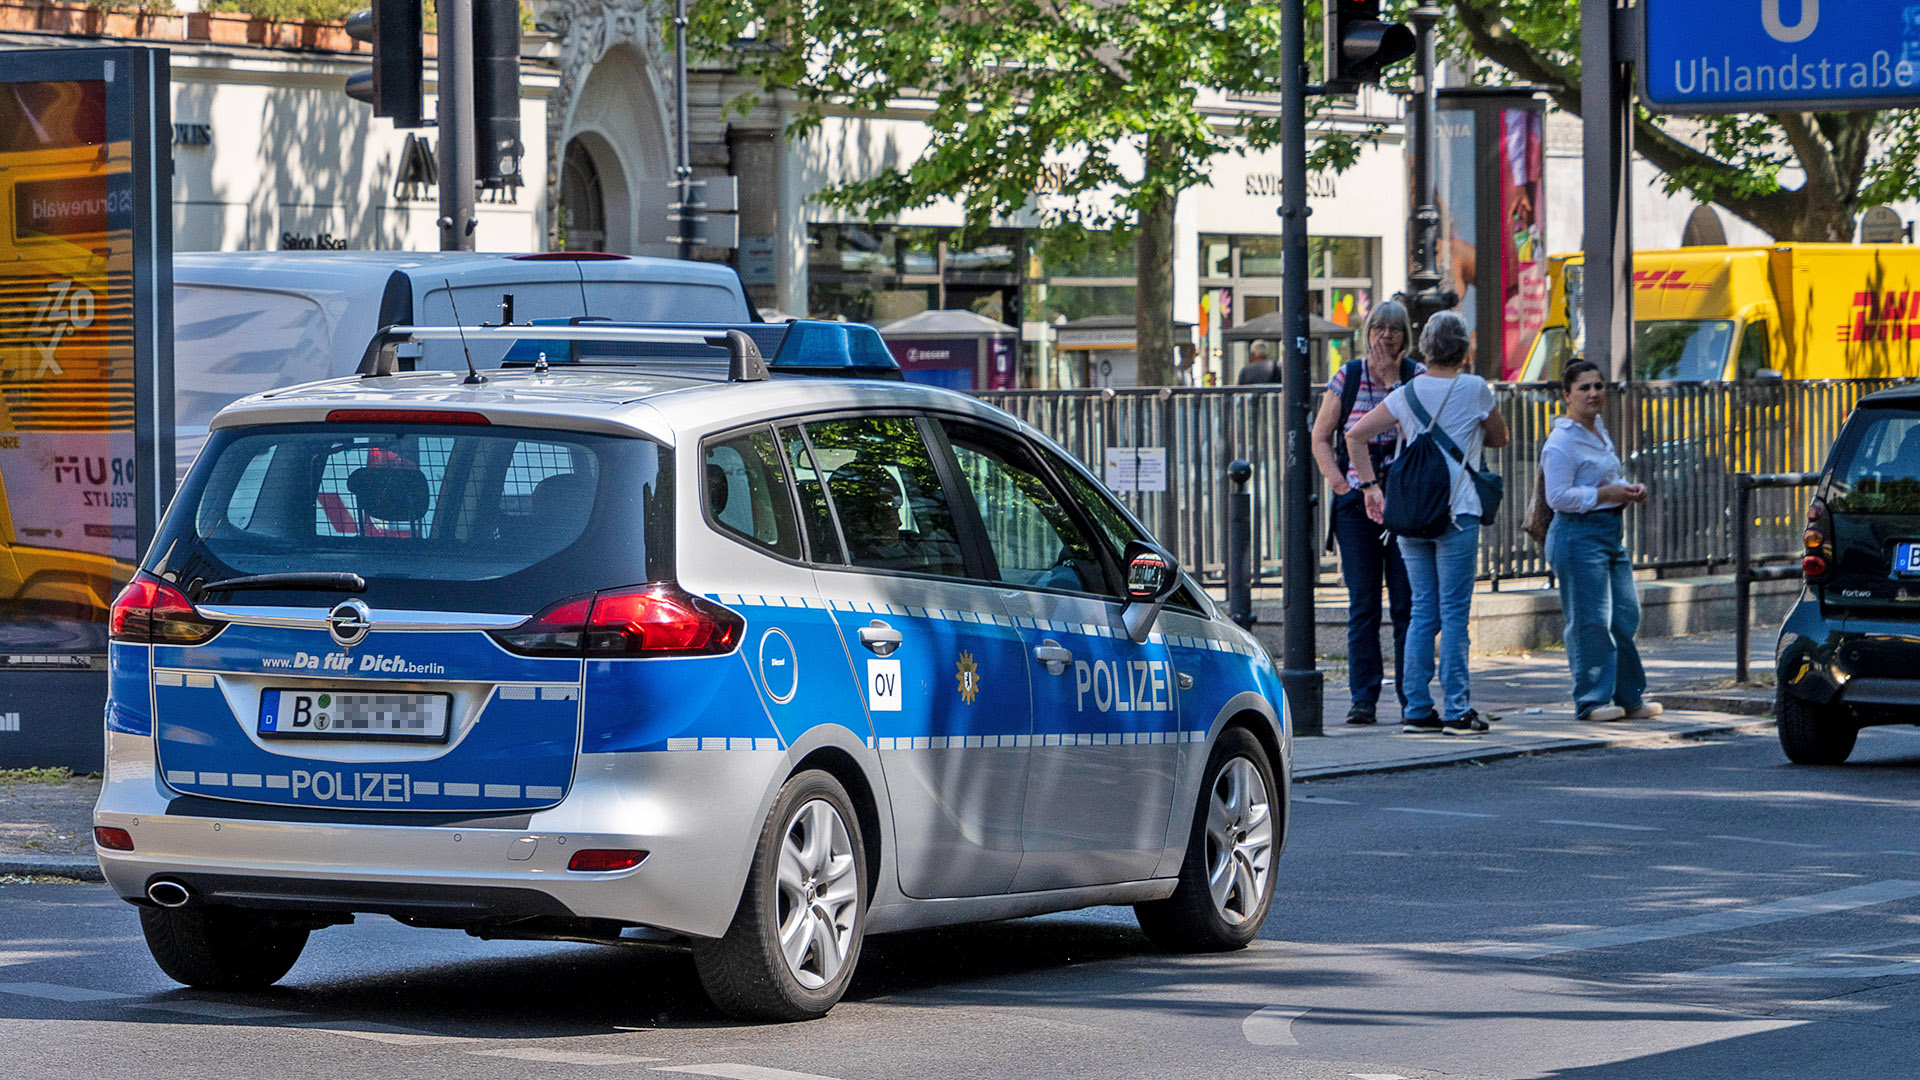 Symbolbild: Polizeiauto in Berlin Charlottenburg.(Quelle: IMAGO/KHSPR)